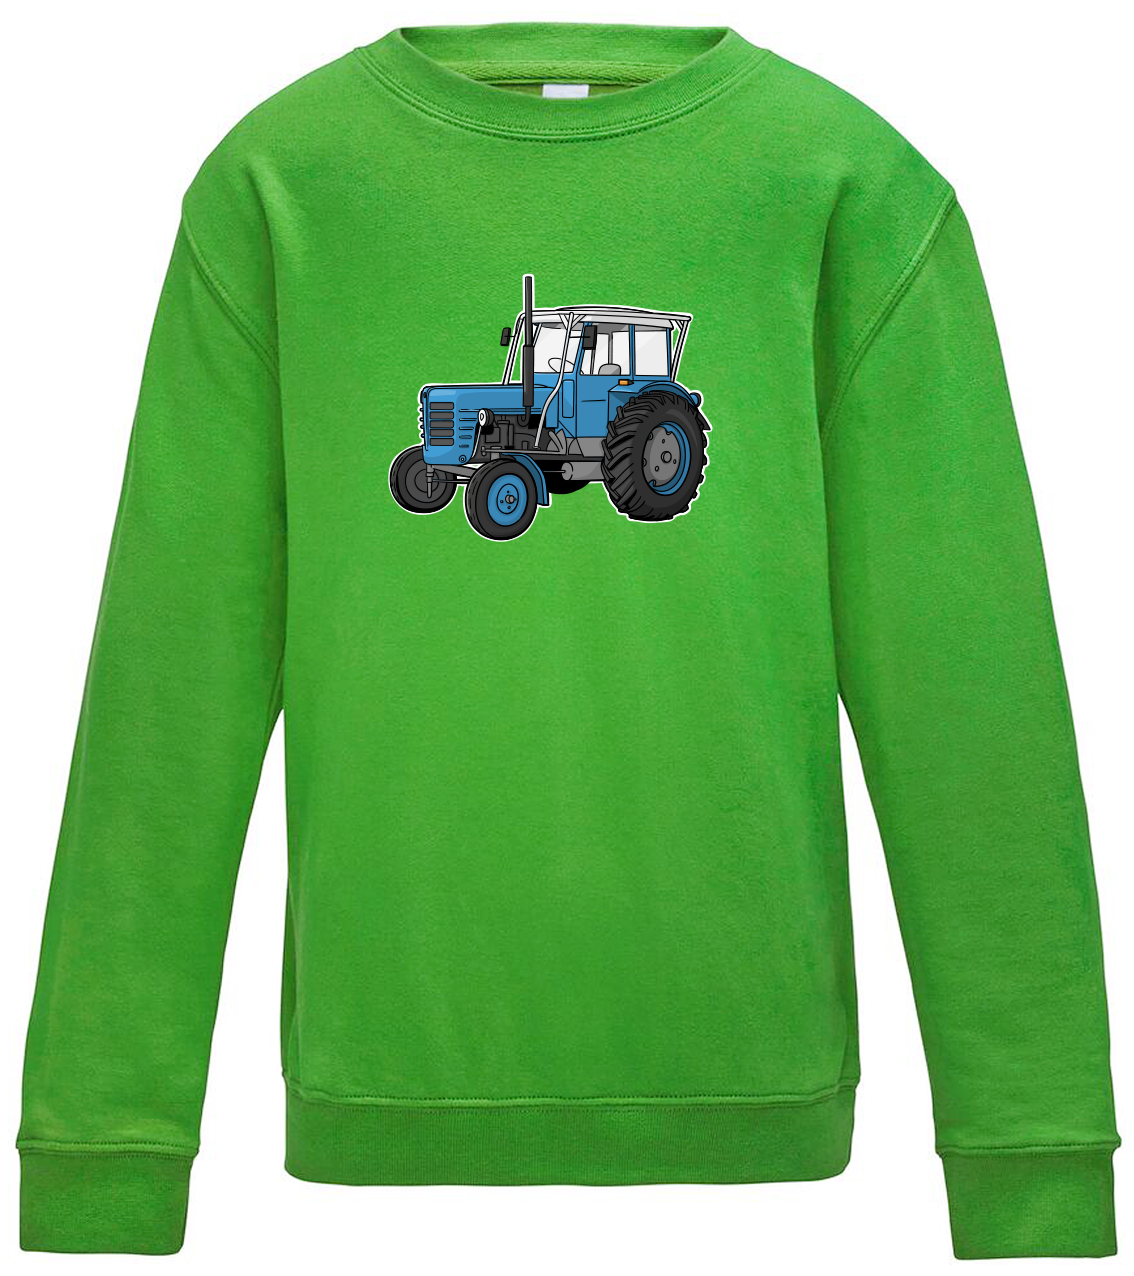 Dětská mikina s traktorem - Starý traktor Velikost: 5/6 (110/116), Barva: Zelená